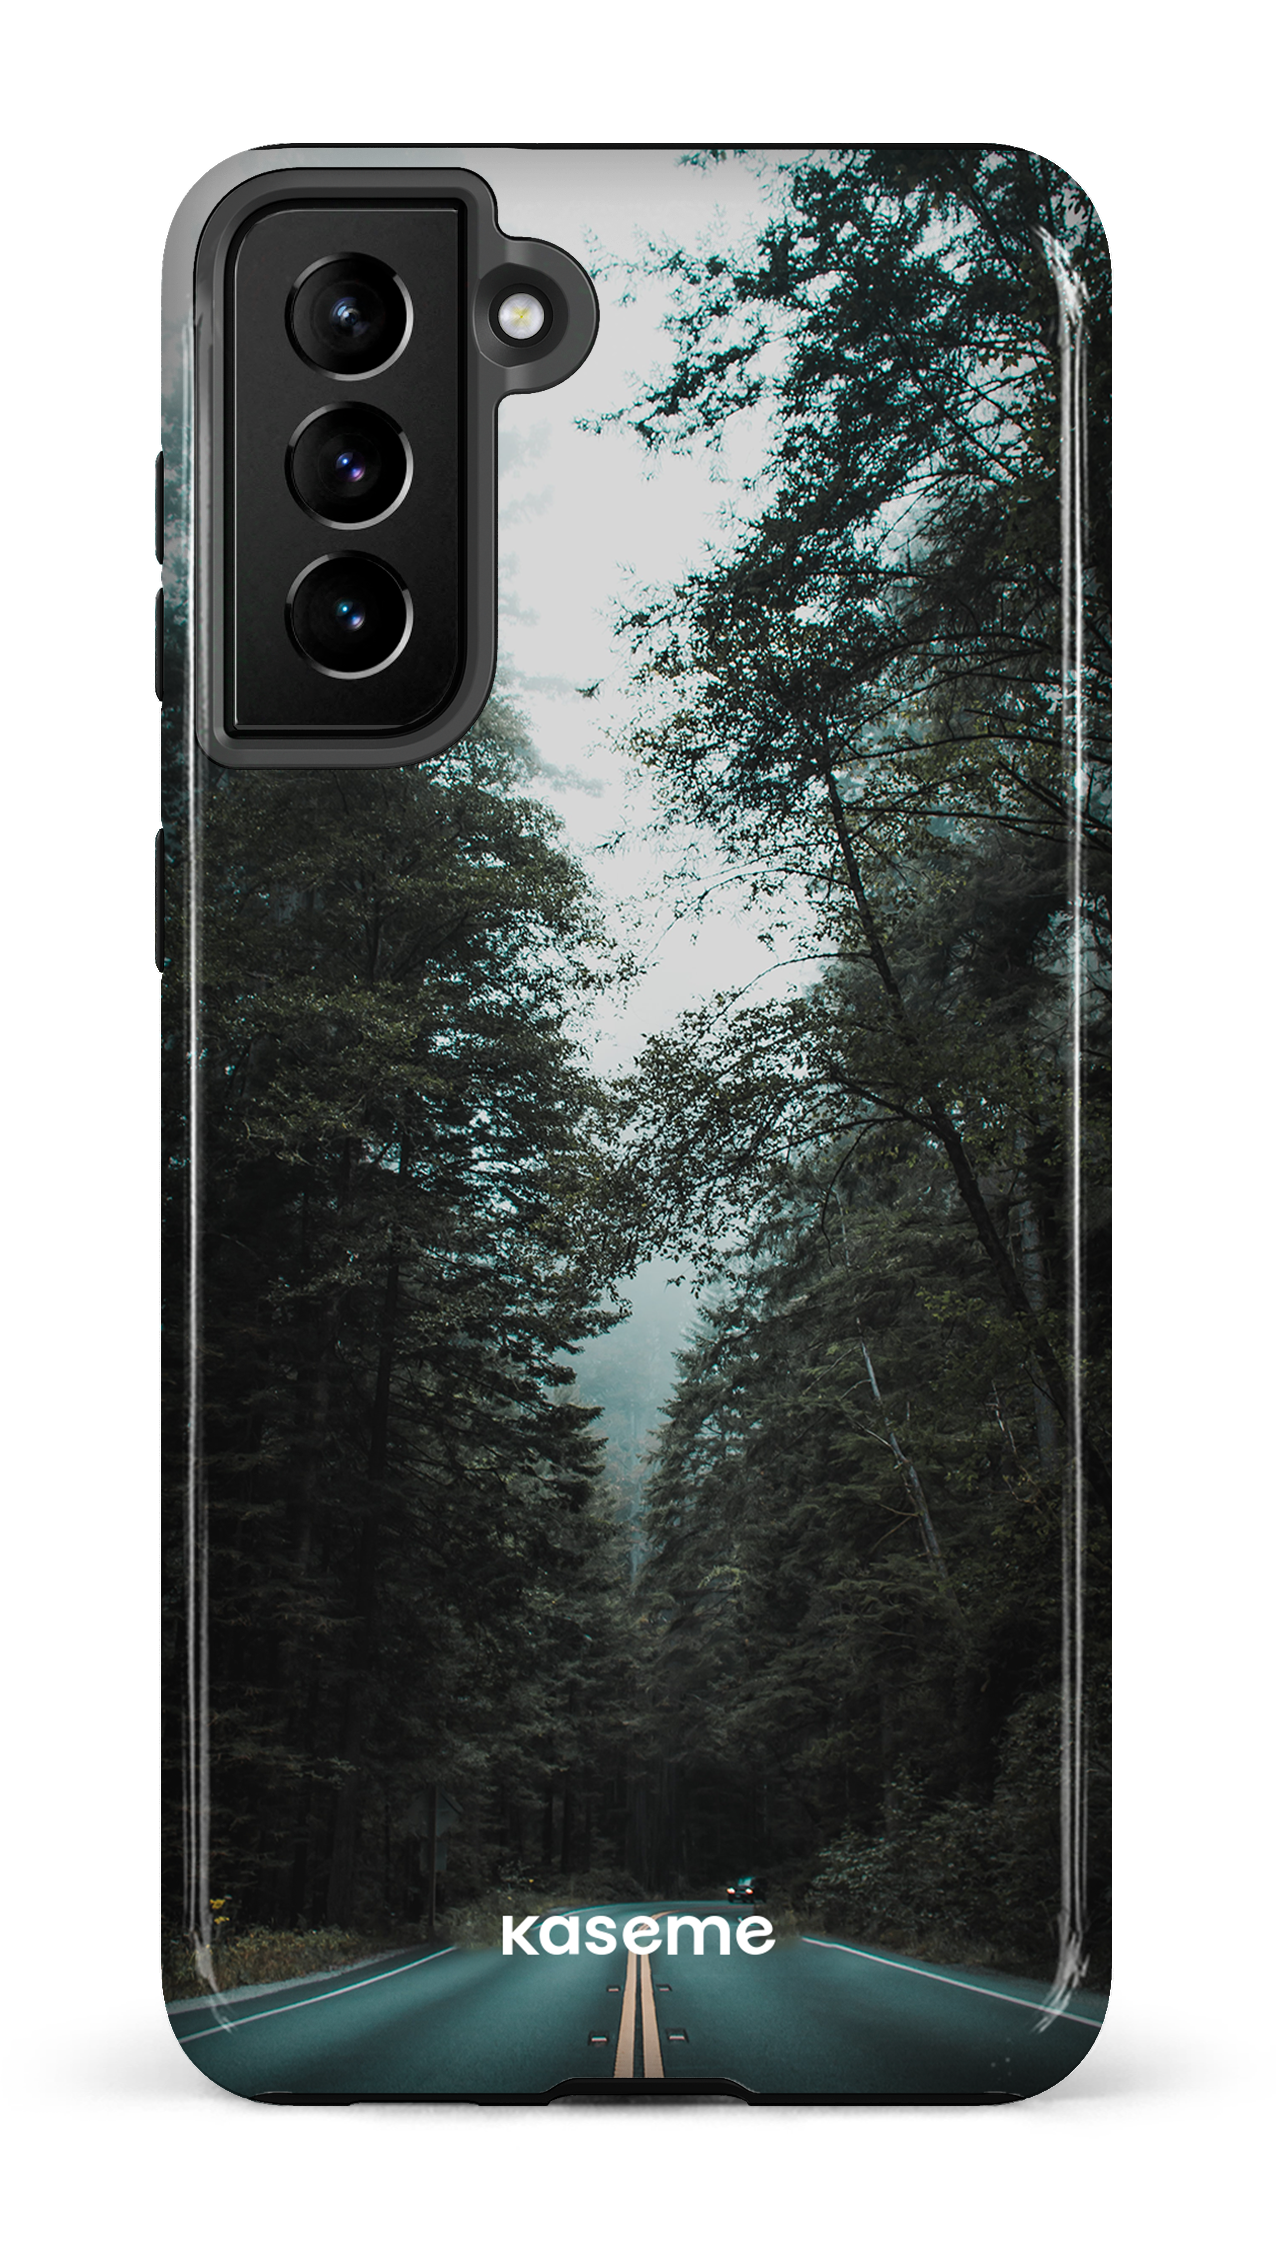 Sequoia - Galaxy S21 Plus